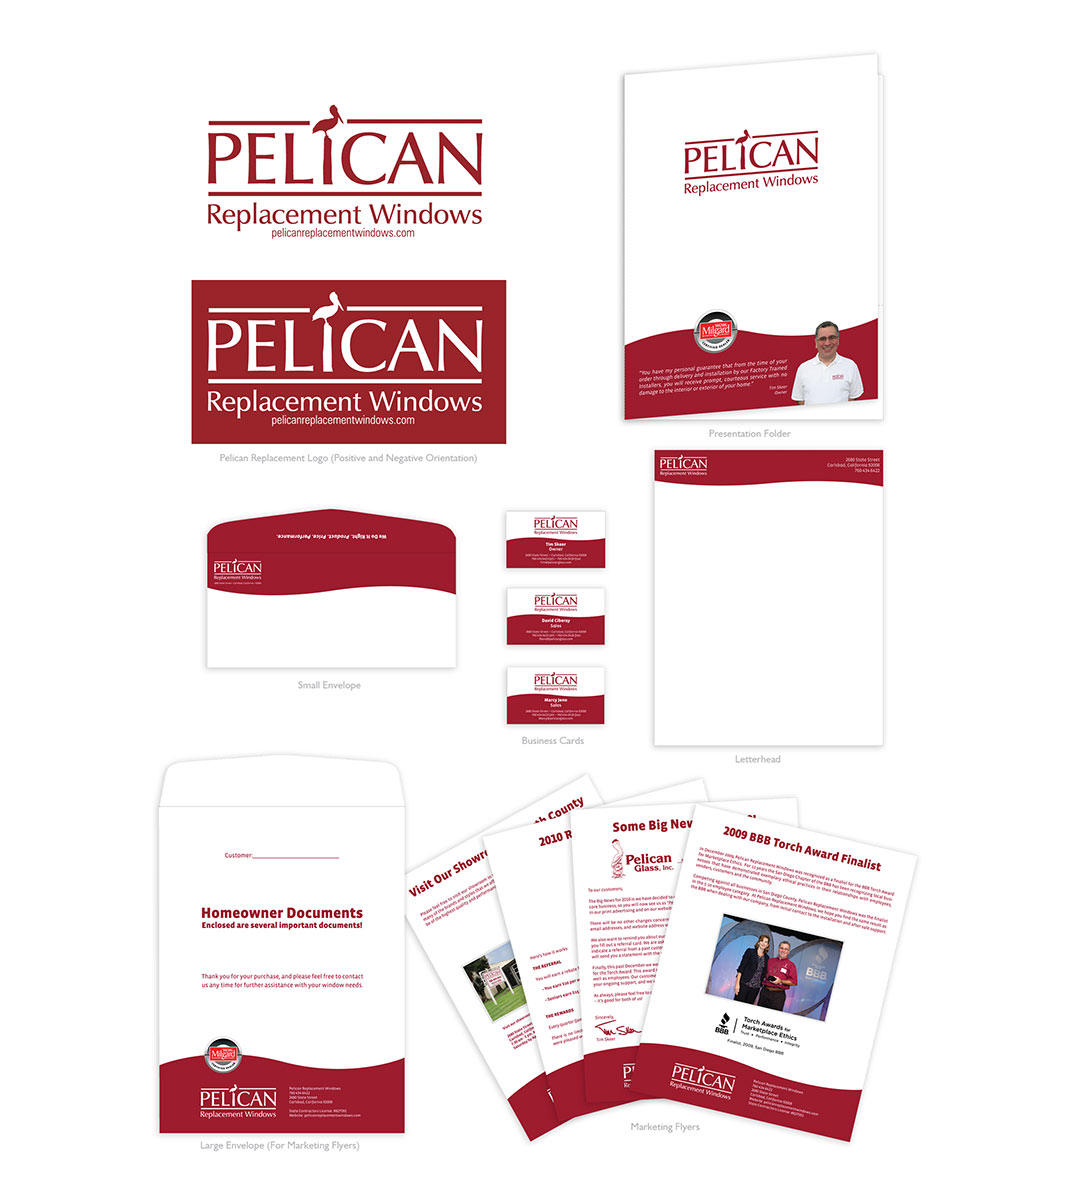 Pelican Replacement Windows Branding Study